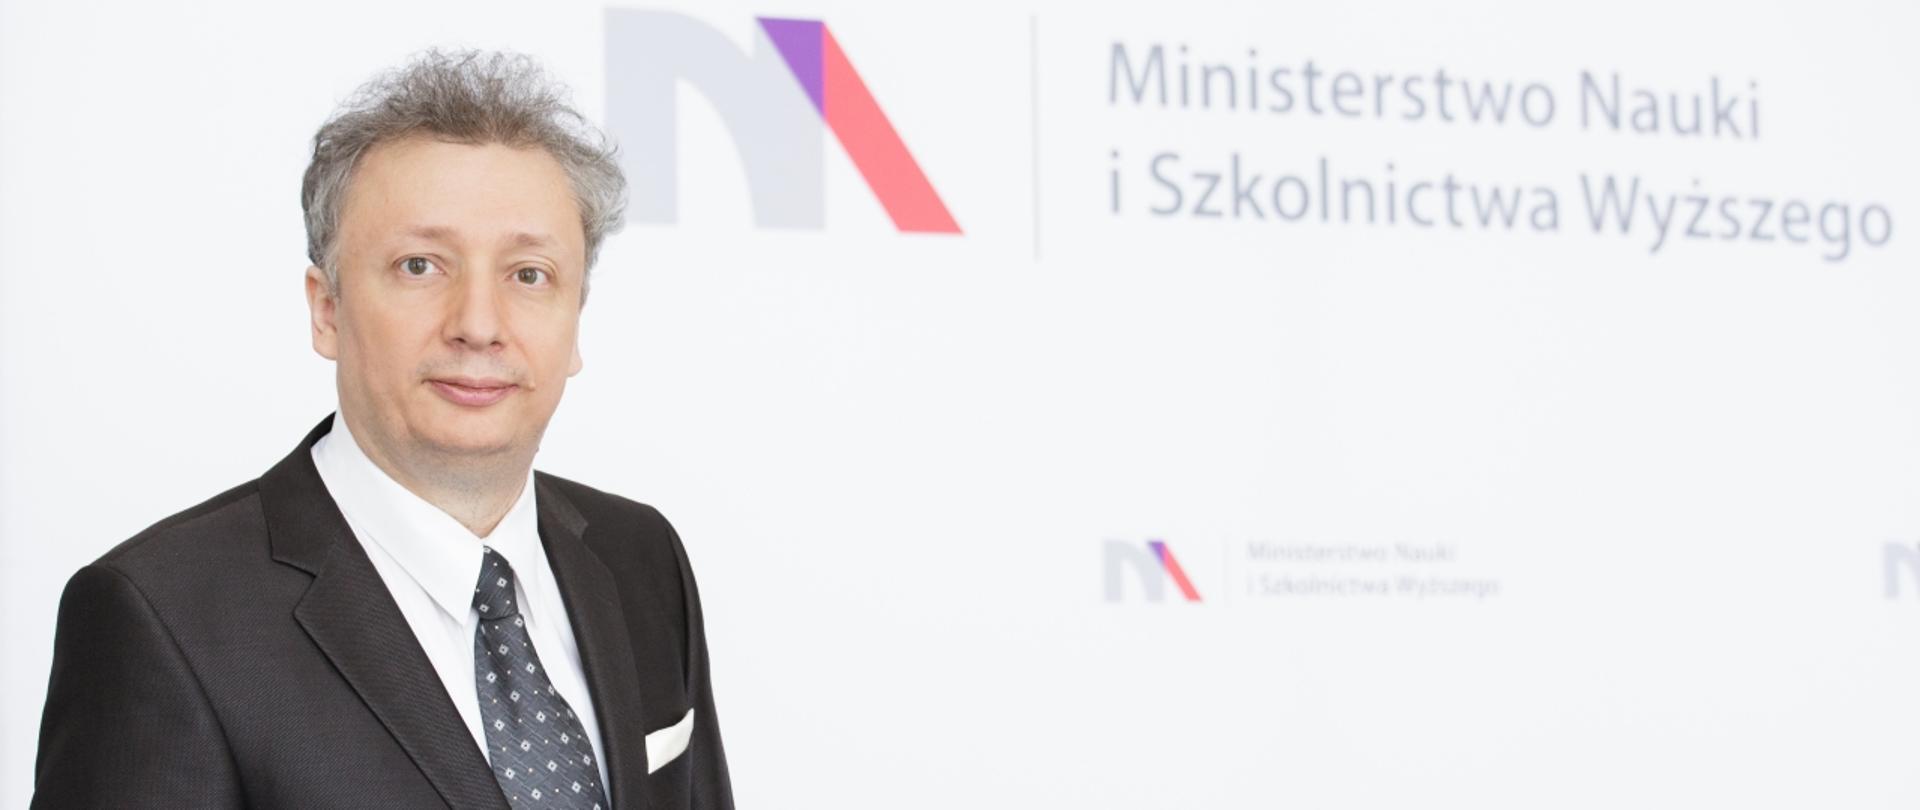 Minister S. Skuza stoi na tle białej ściany z logiem MNiSW